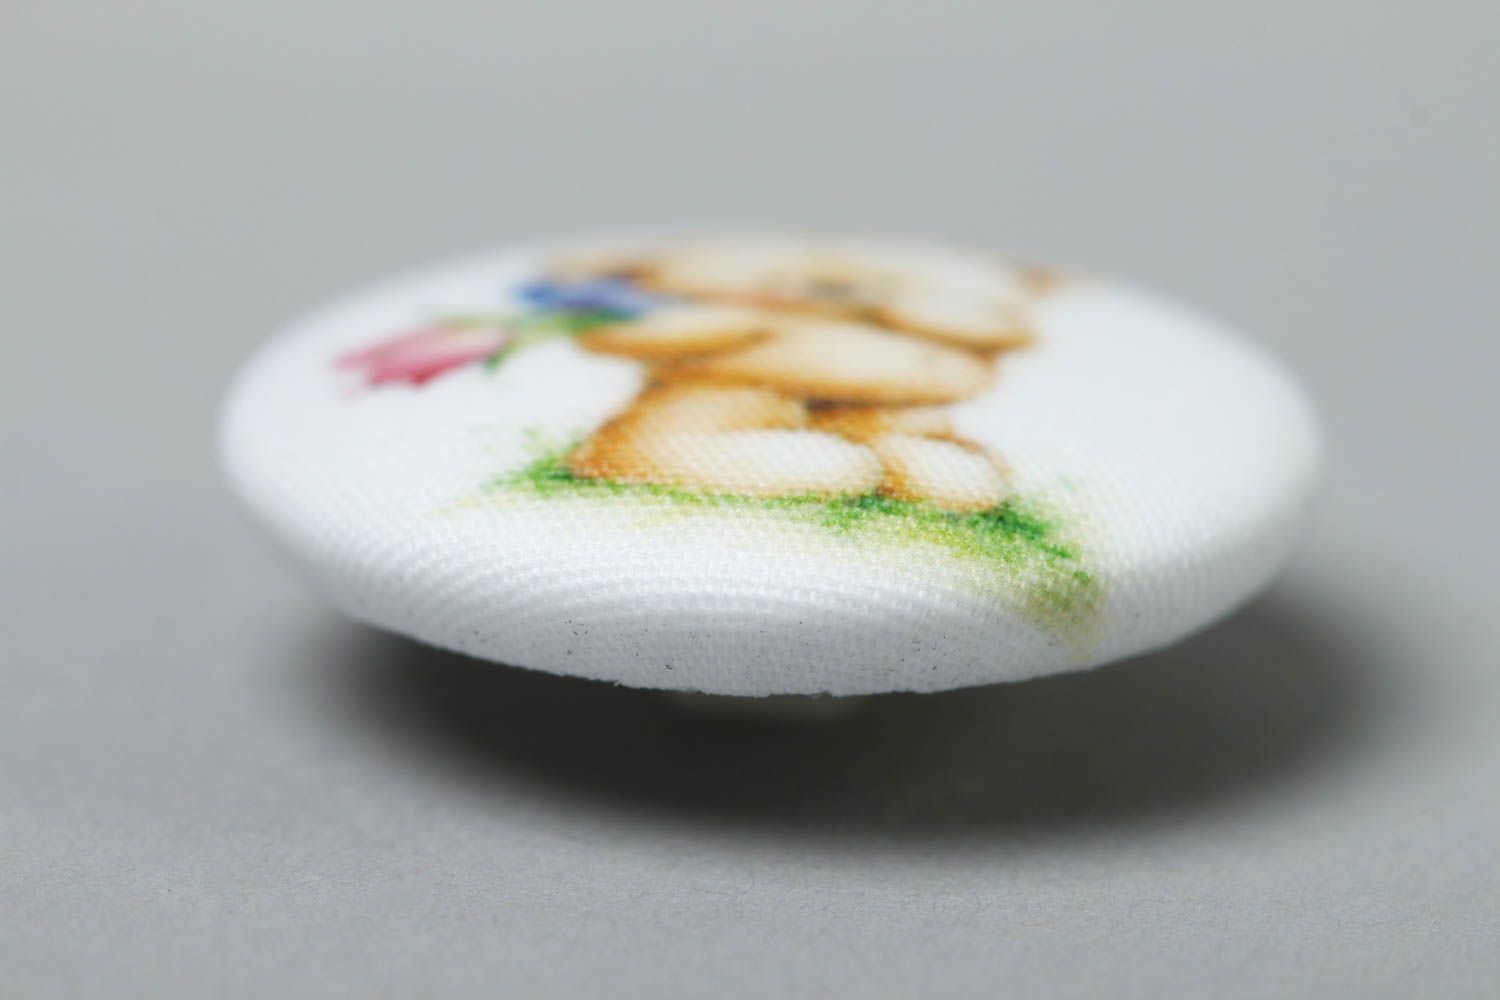 Beautiful handmade fabric button art materials needlework supplies gift ideas photo 4